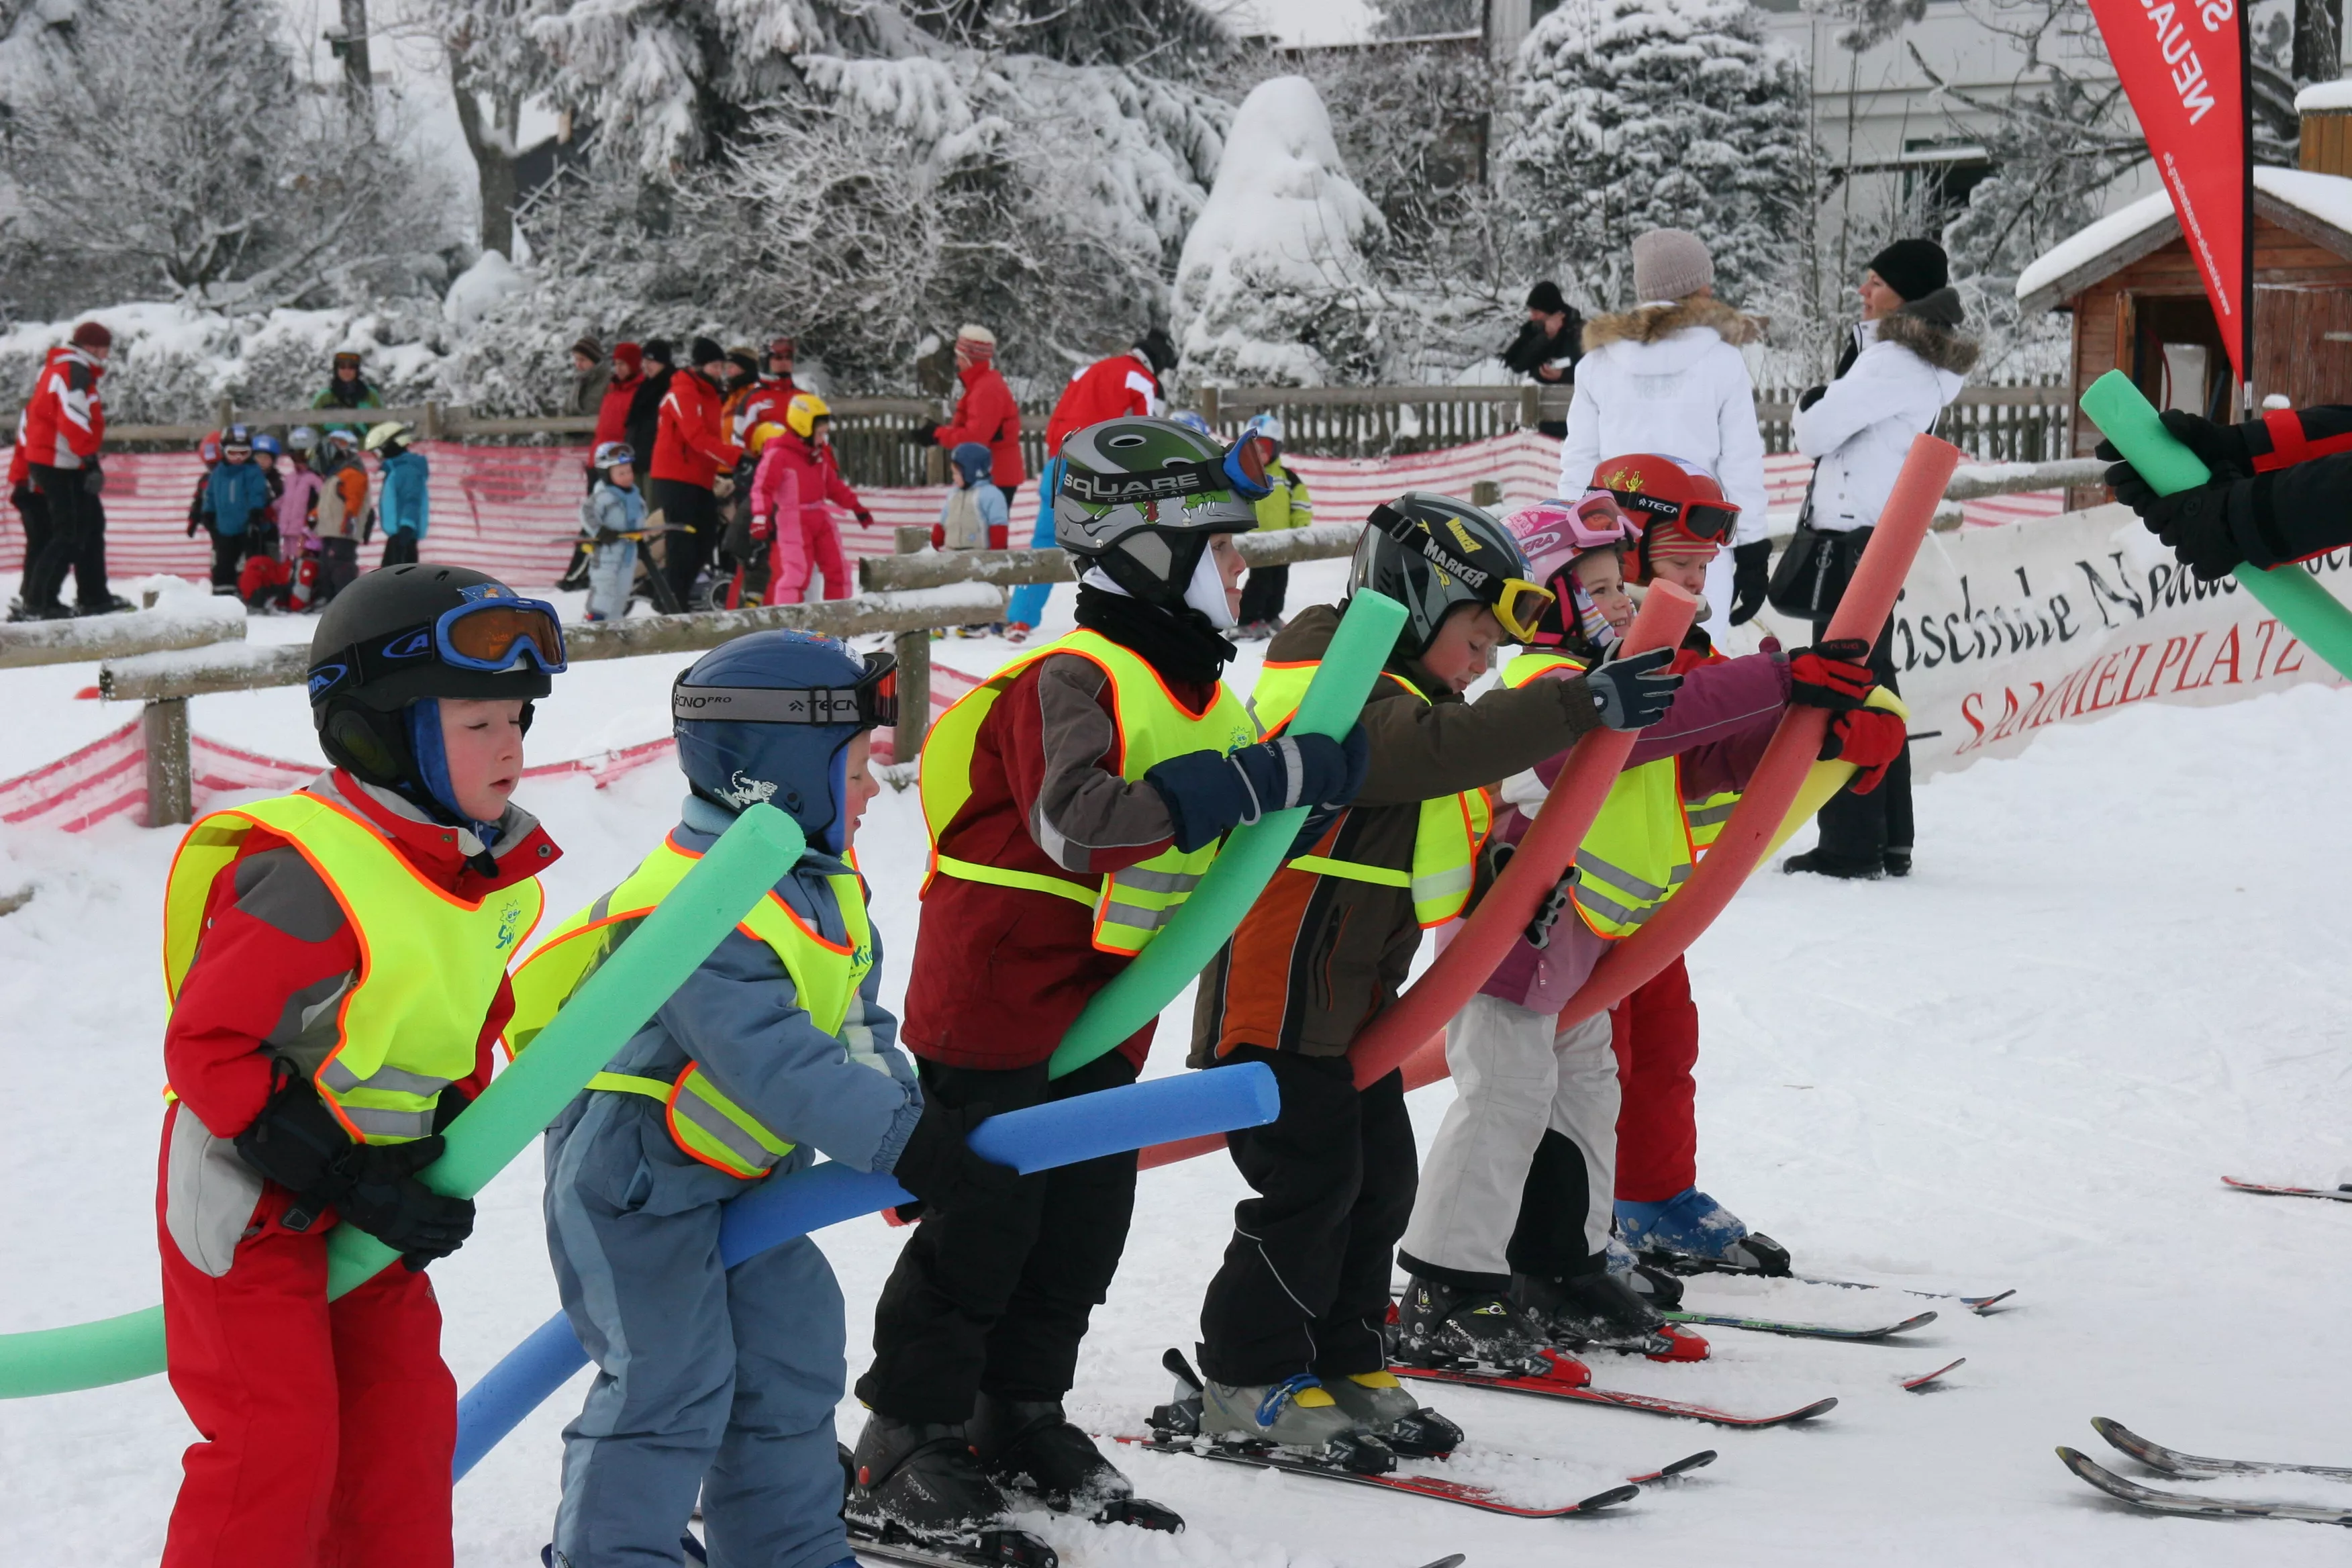 Skischule Neuastenberg in Germany, Europe | Snowboarding,Skiing - Rated 0.7